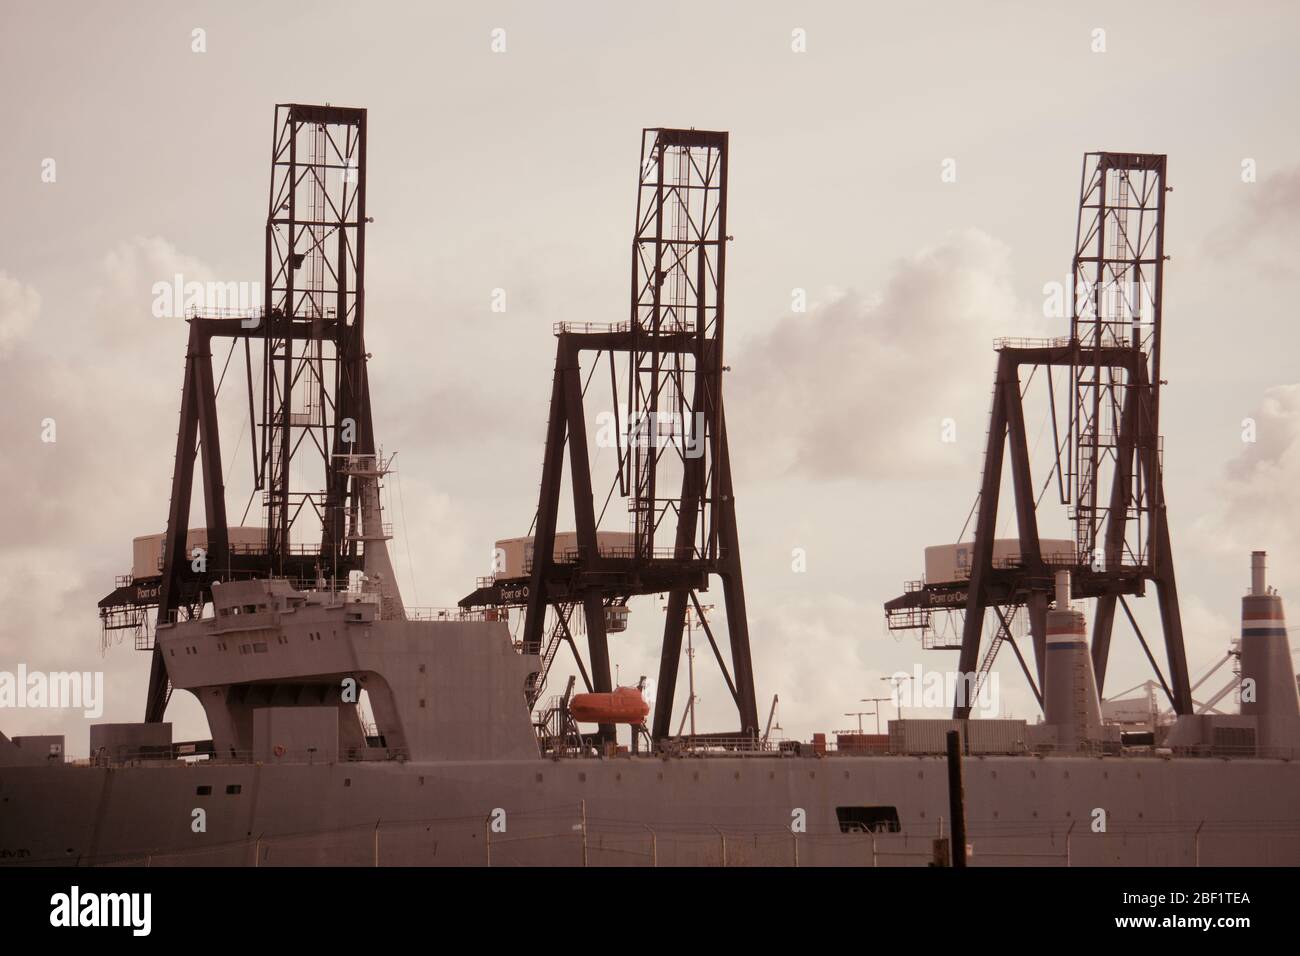 SS Cape Mohican SEABEE Lastkahn und Kriegsschiff am internationalen Schiffs-Container-Terminal mit Schiffskranen. Außenhafen, Hafen von Oakland. Stockfoto